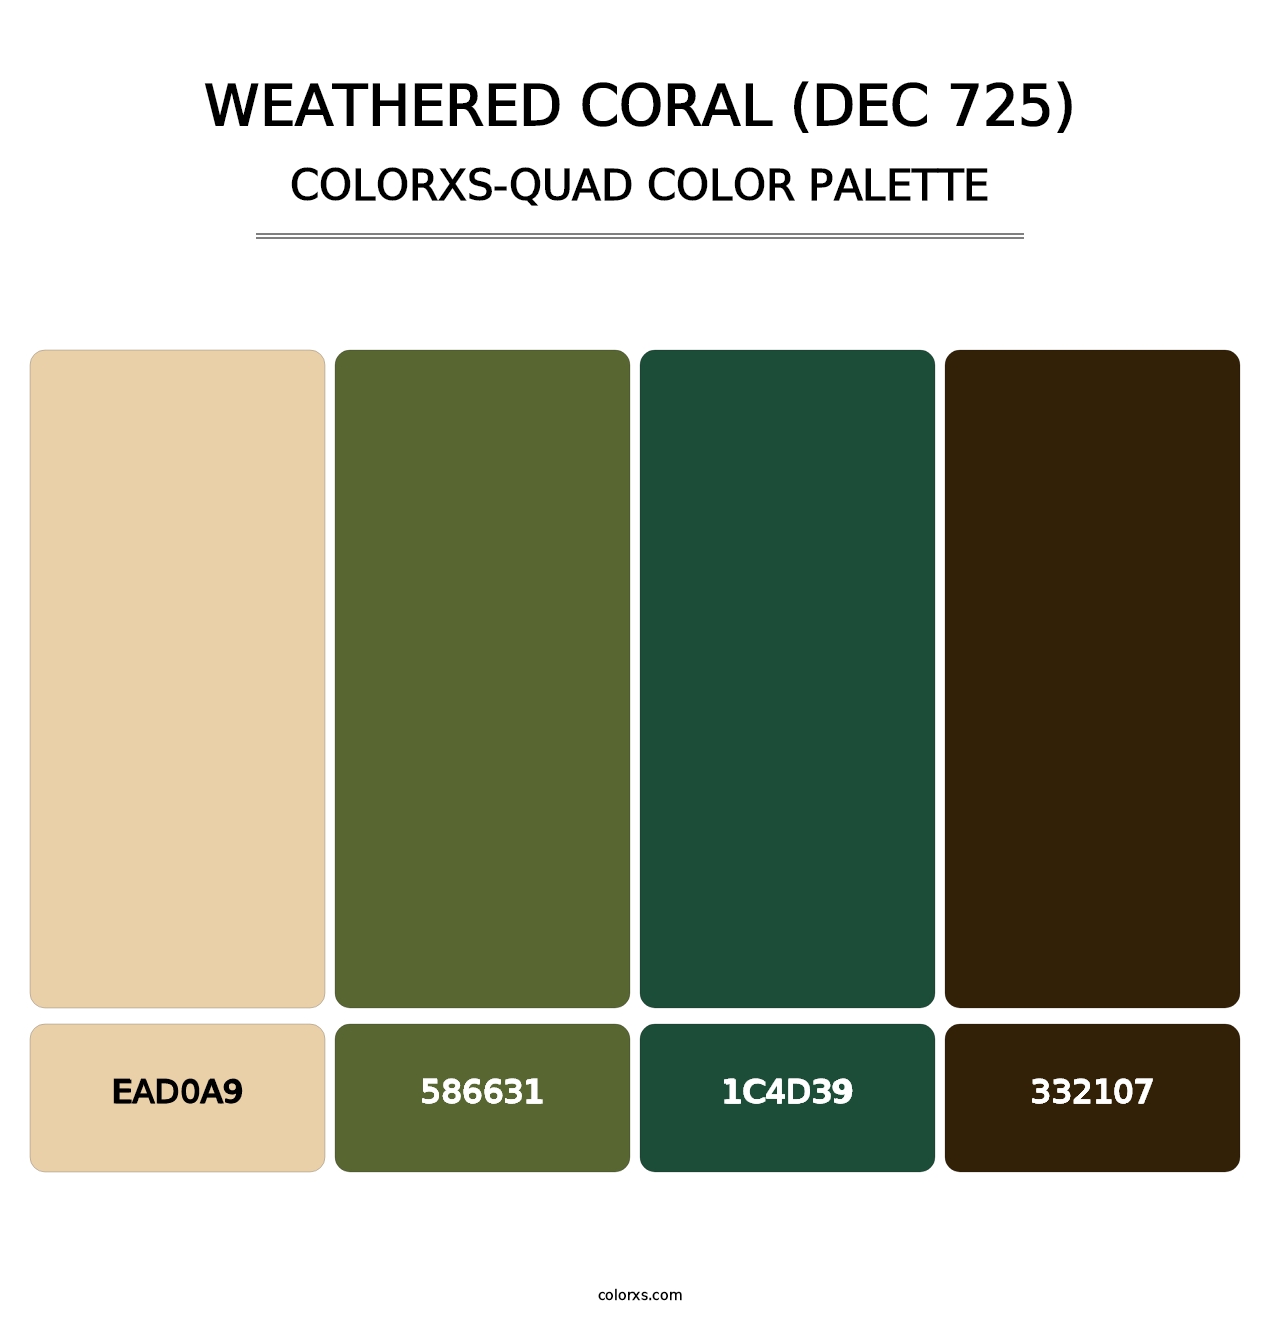 Weathered Coral (DEC 725) - Colorxs Quad Palette